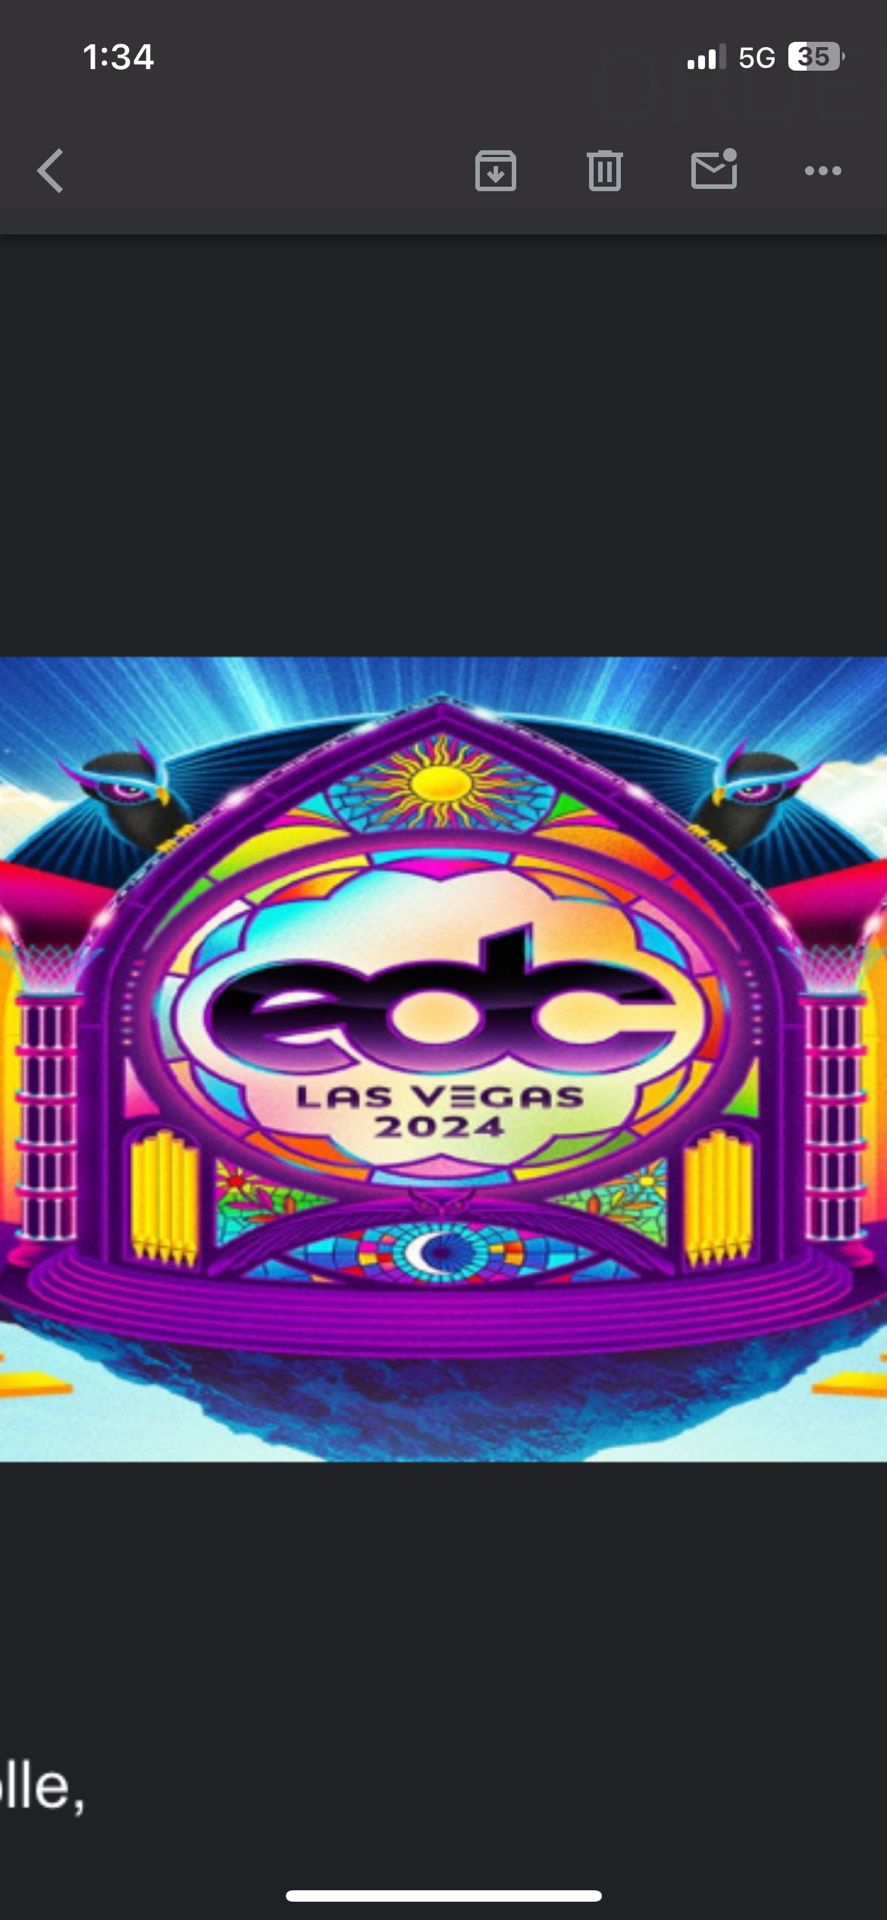 EDC Las Vegas 